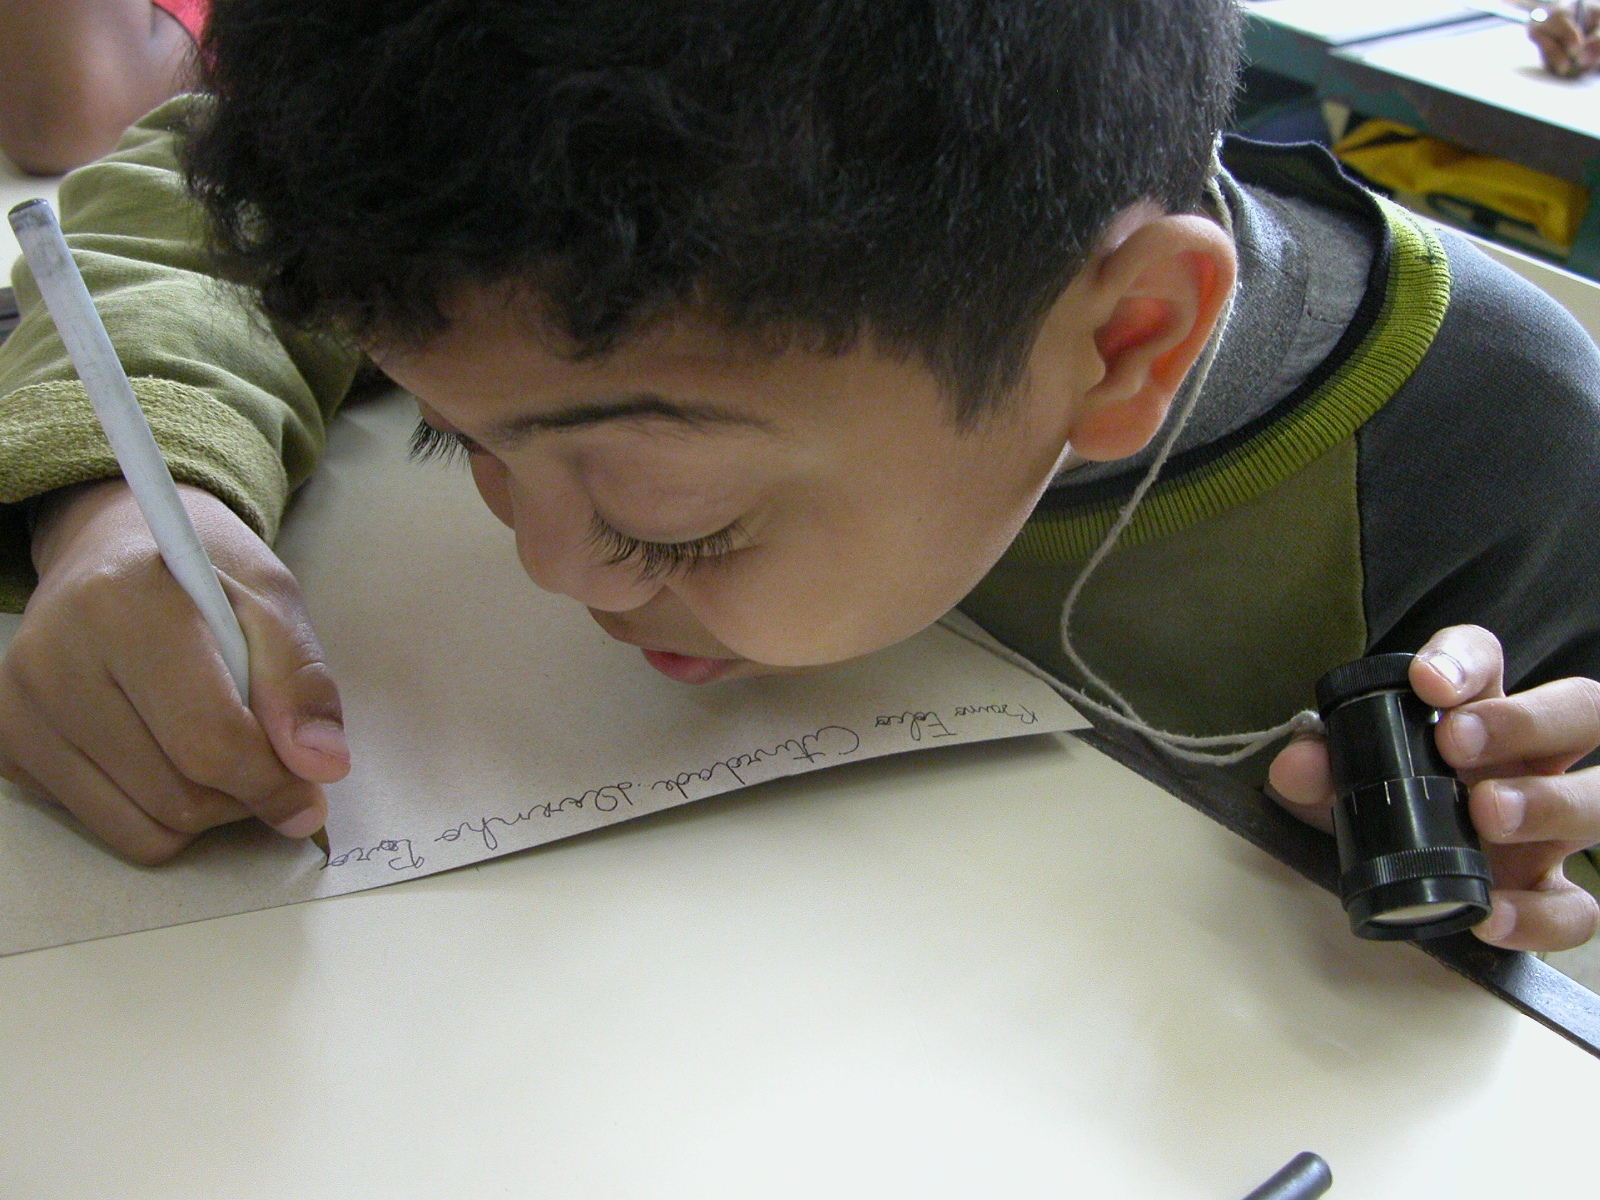 Criança com baixa-visão segura tele-lupa com uma das mãos e com a outra um lápis.